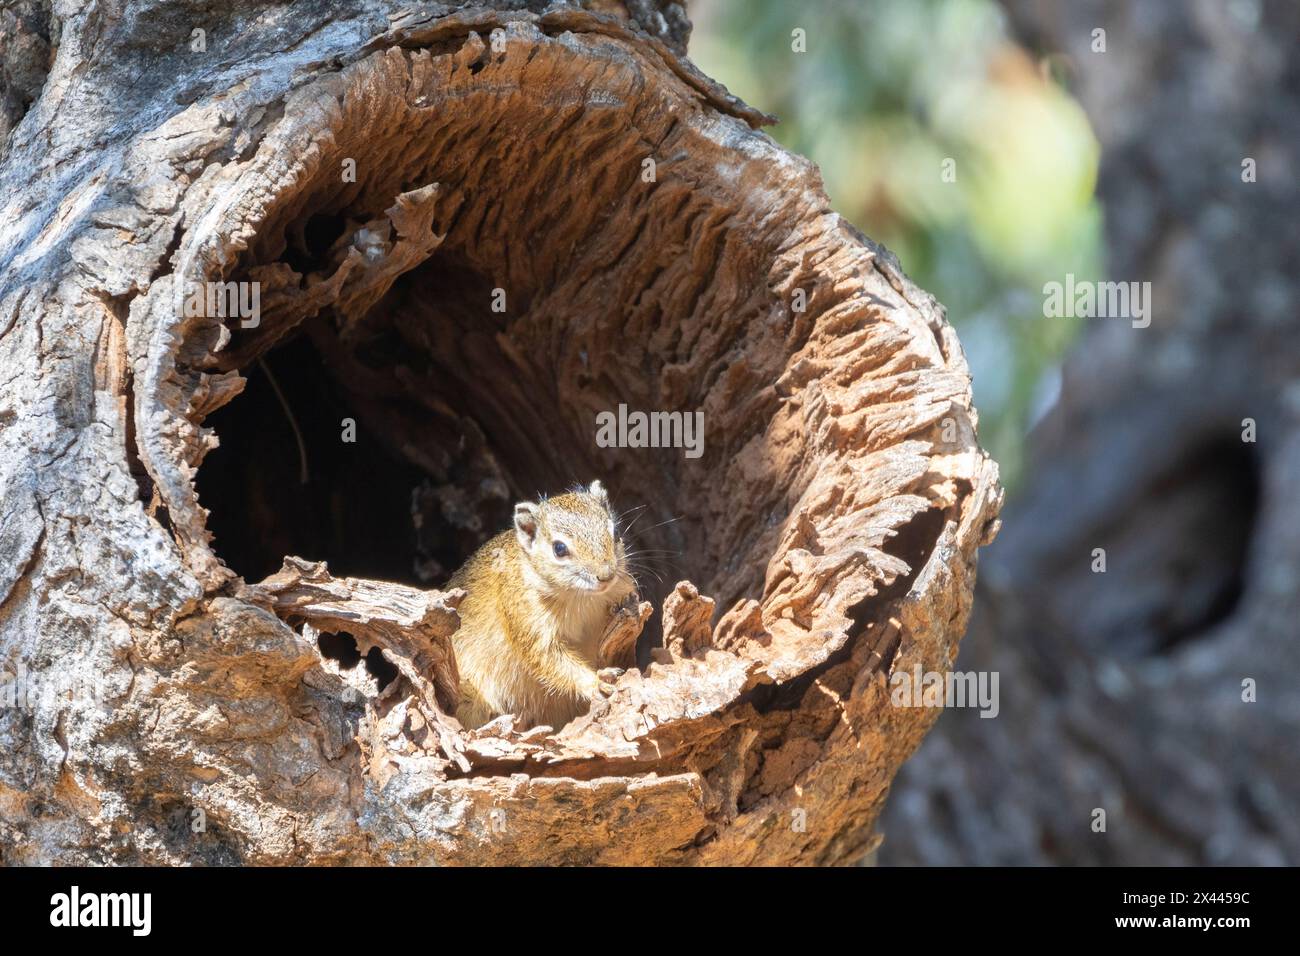 Southern African Tree Eichhörnchen oder Smith's Bush Eichhörnchen (Paraxerus cepapi) in natürlicher Baumhöhle in Laubwäldern, Mpumalanga, Südafrika Stockfoto